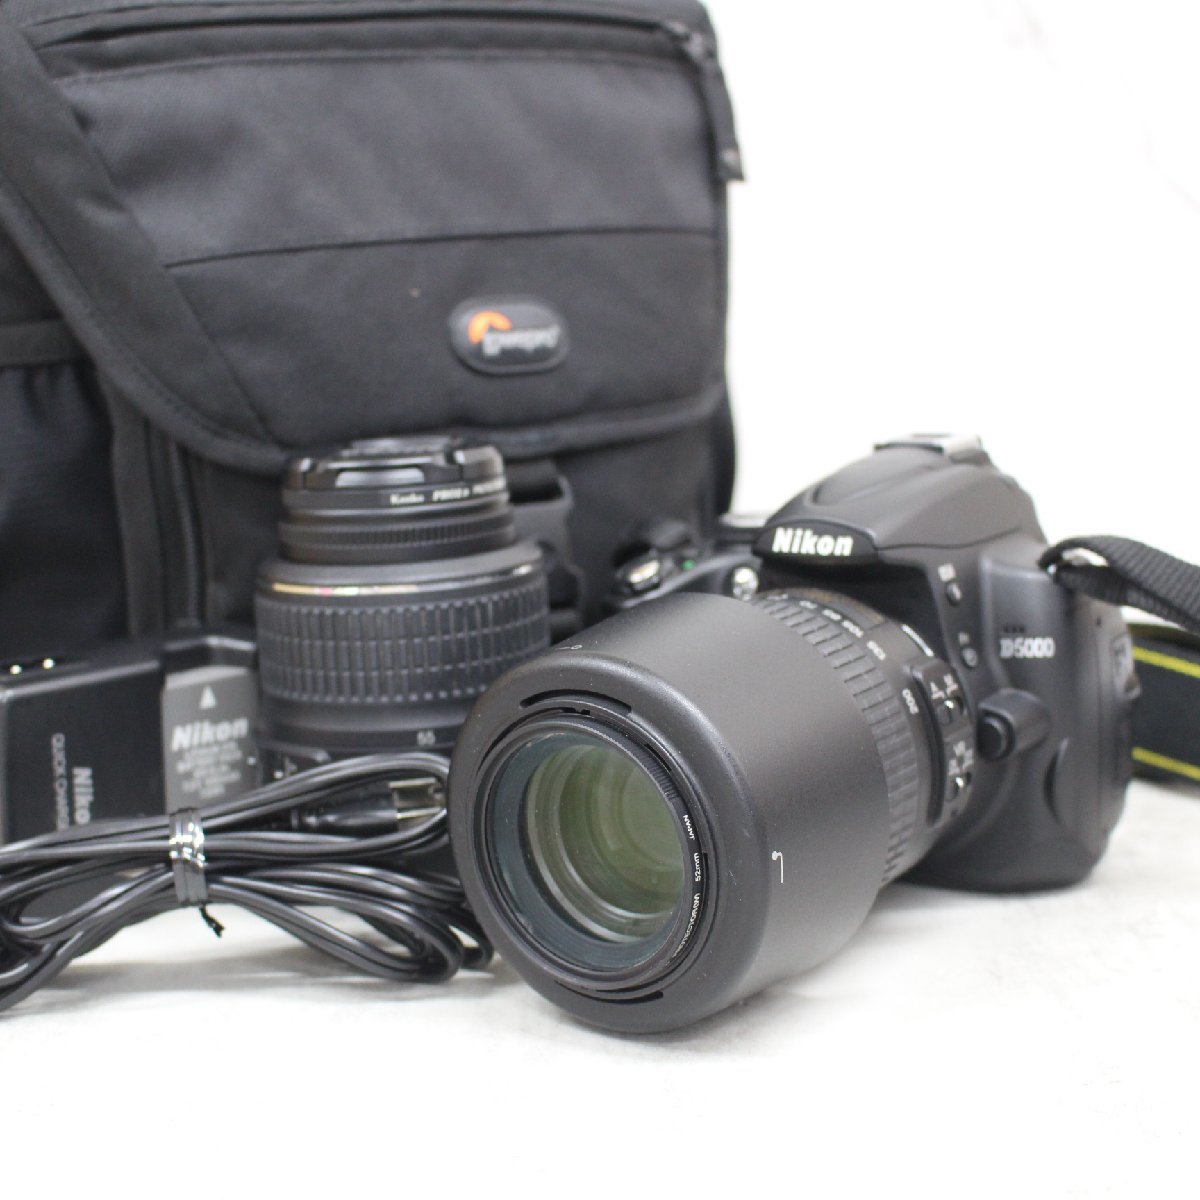 S703)Nikon D5000 ダブルズームキット 18-55mm 55-200mm デジタル一眼